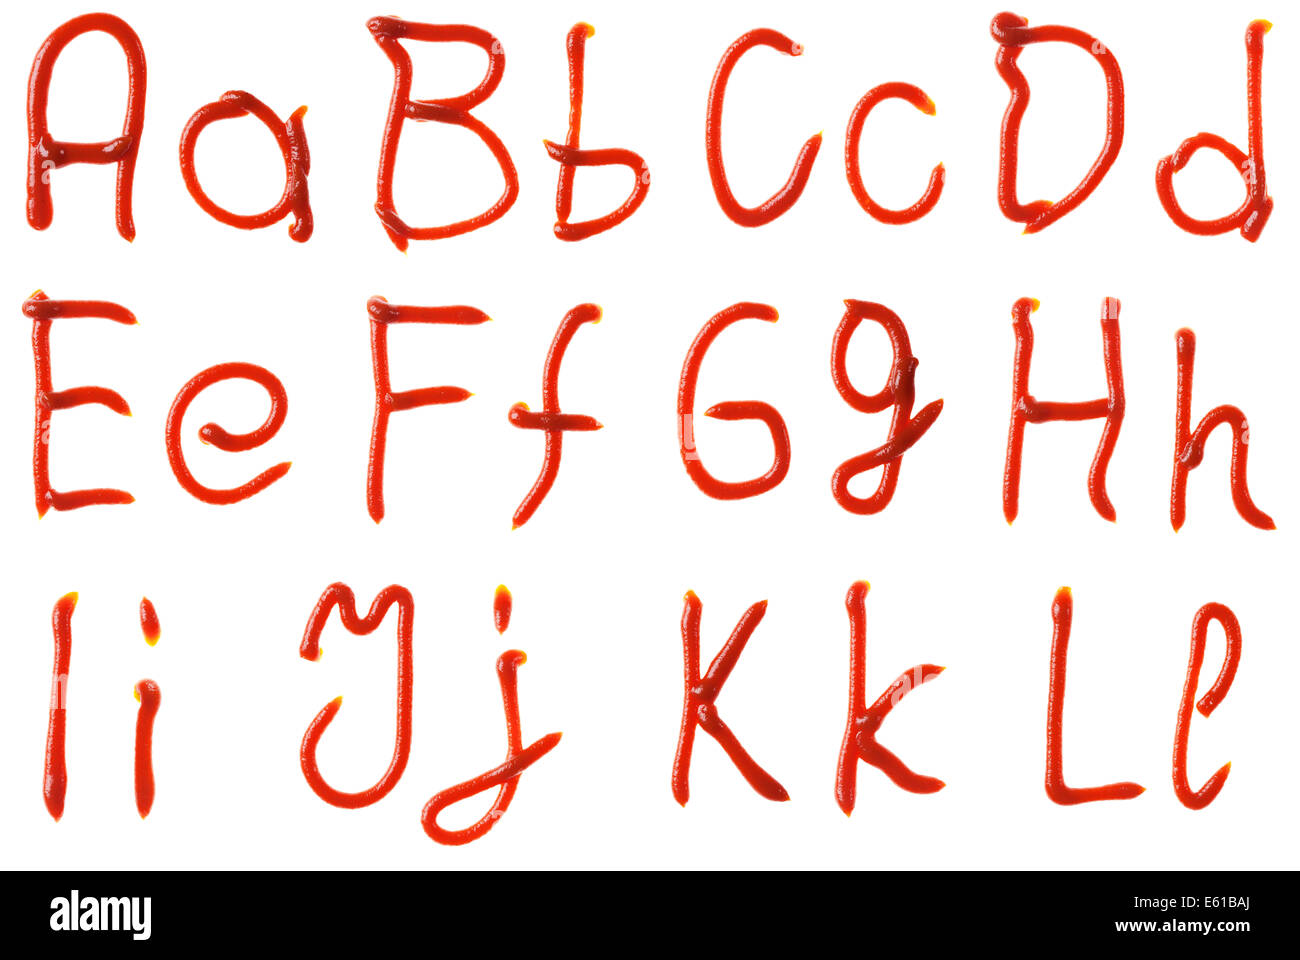 Alphabet Buchstaben hergestellt aus Tomaten, Ketchup Sirup sind isoliert Stockfoto